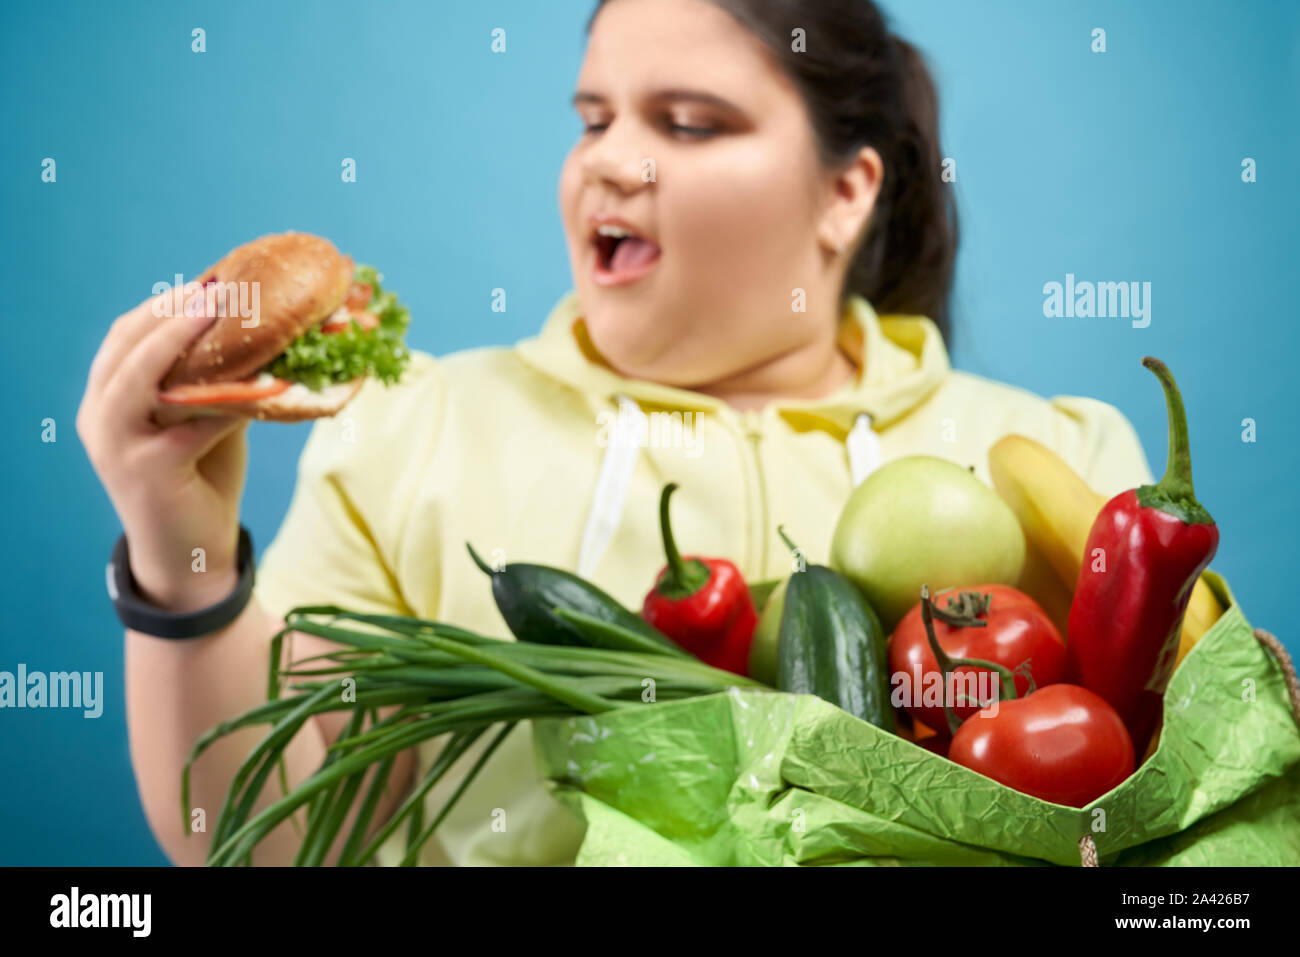 Lato del grasso brunette girl cercando di mangiare hamburger e mantenendo il pacchetto di frutta e verdura. Paffuto giovane femmina in felpa gialla è la scelta di un fast food invece di sani e freschi di pasto. Foto Stock